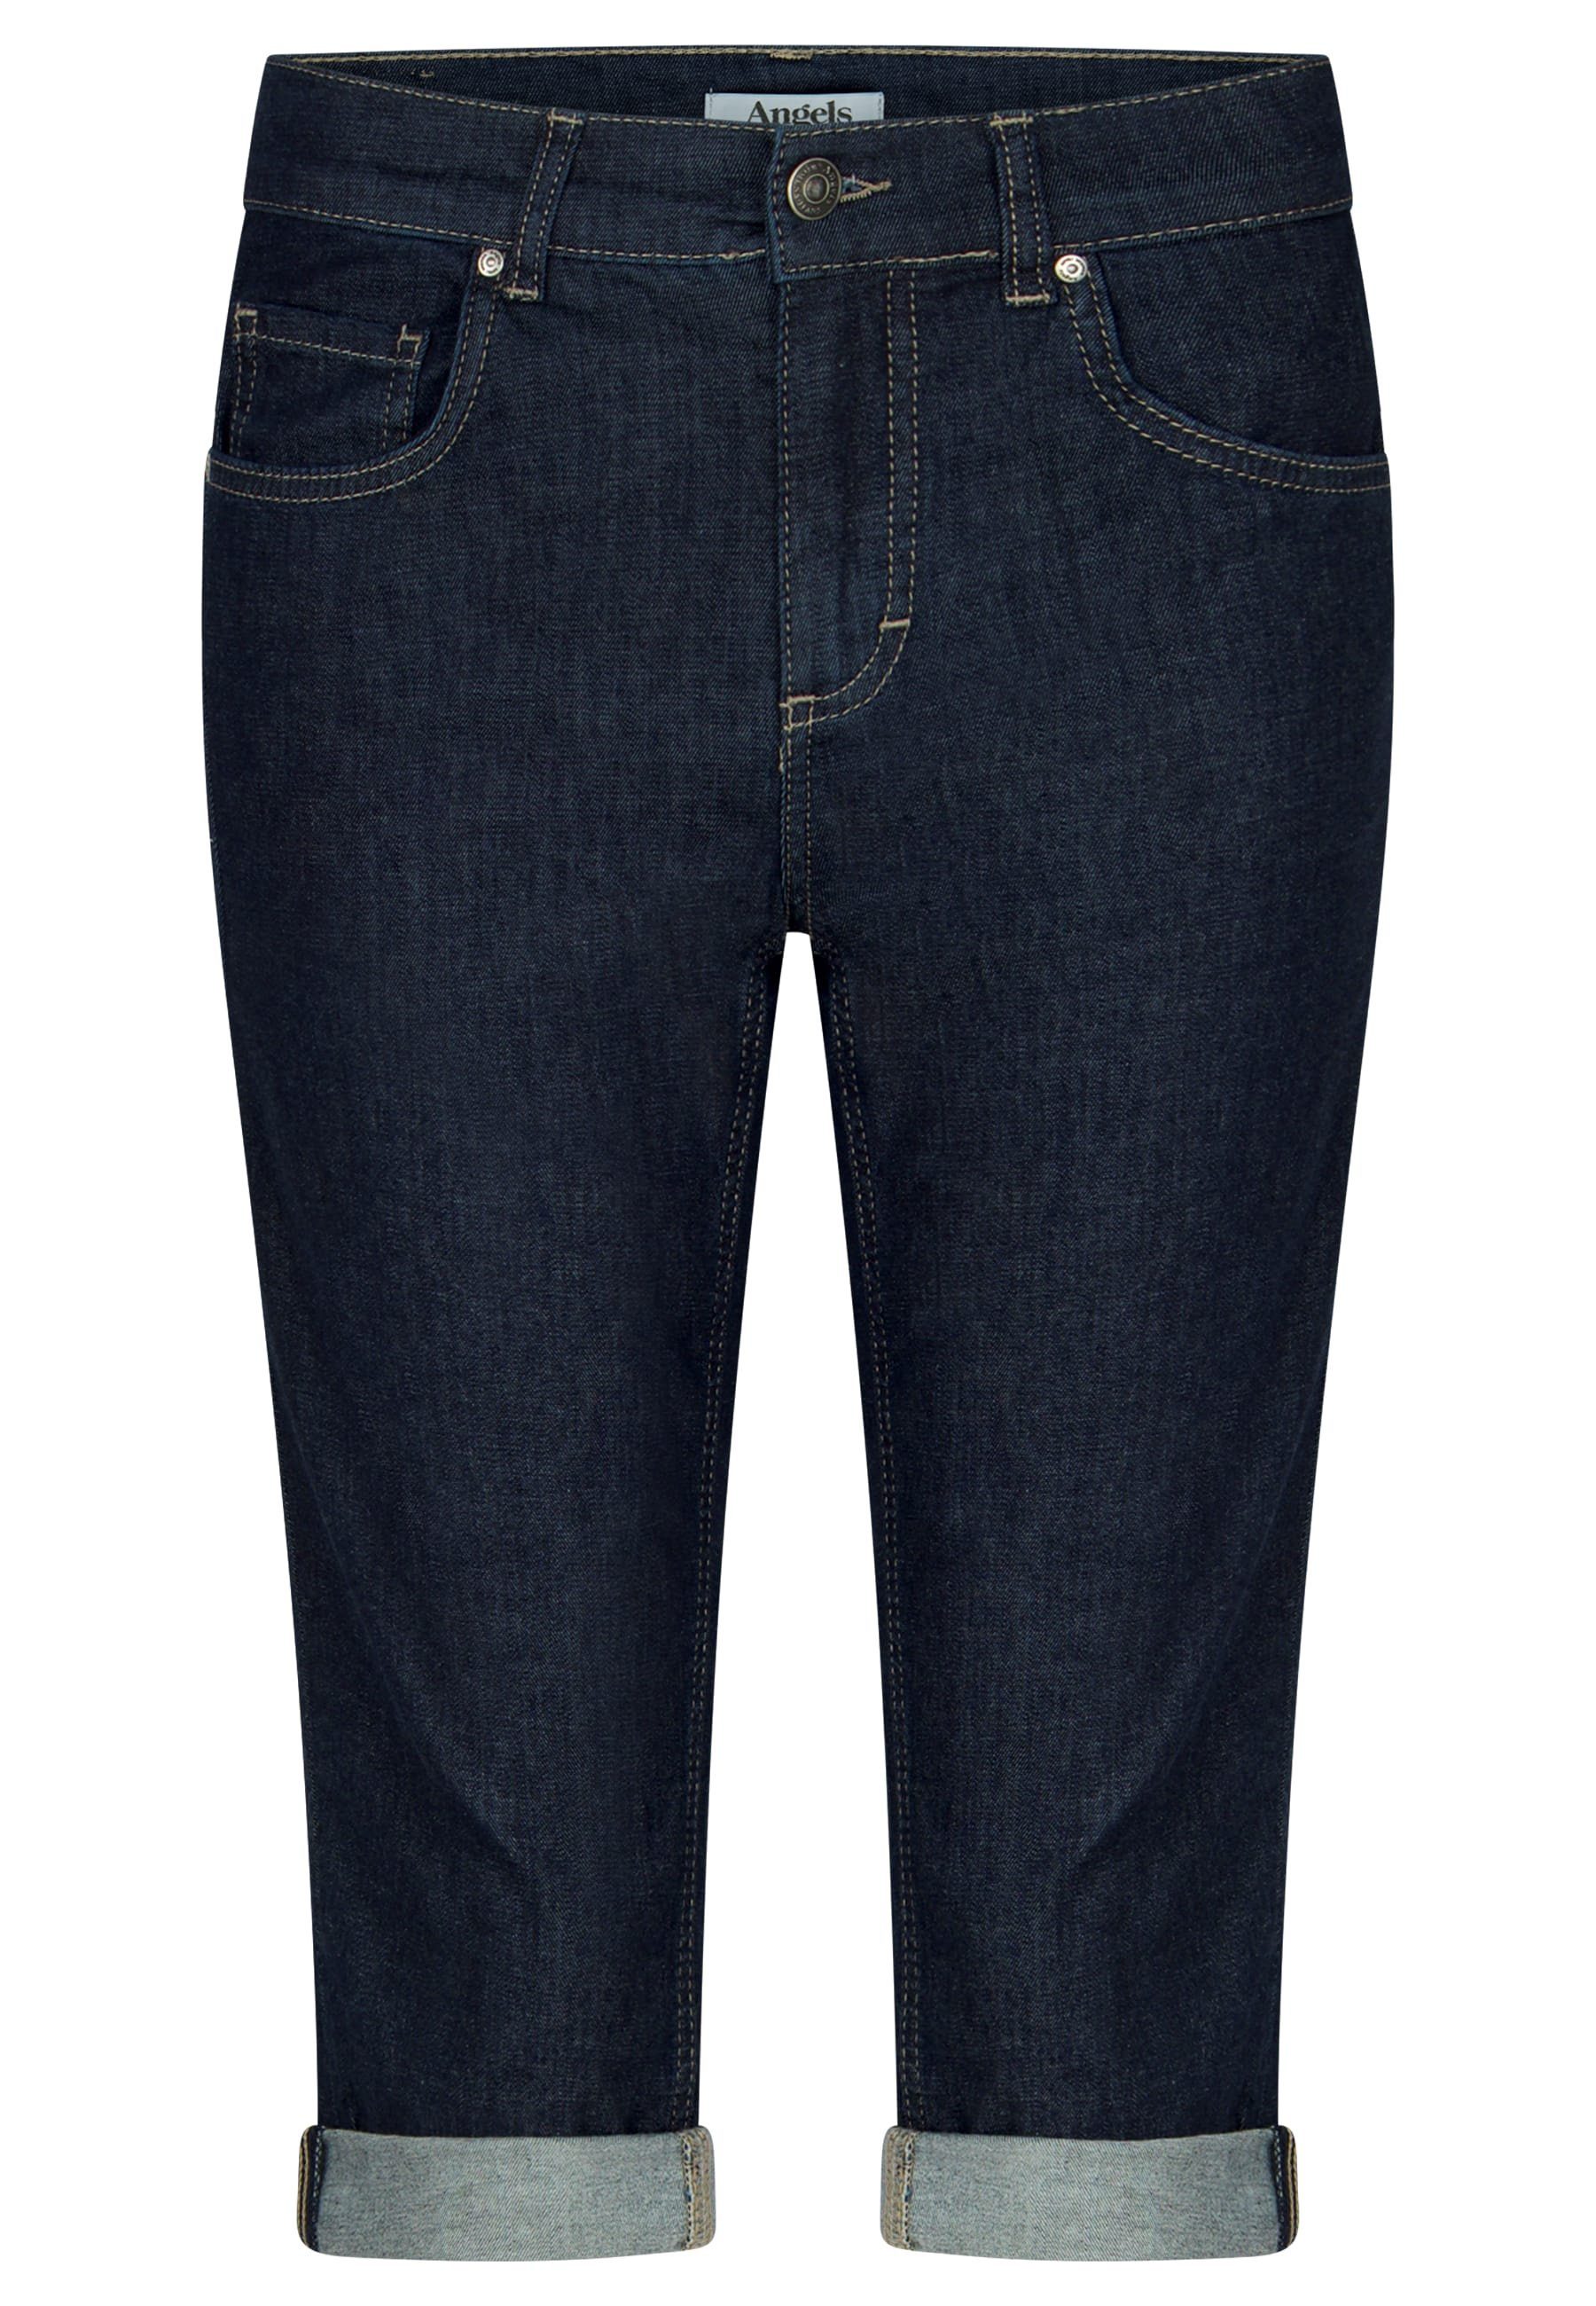 ANGELS 5-Pocket-Jeans Jeans Capri TU mit Label-Applikationen Used-Look blau mit